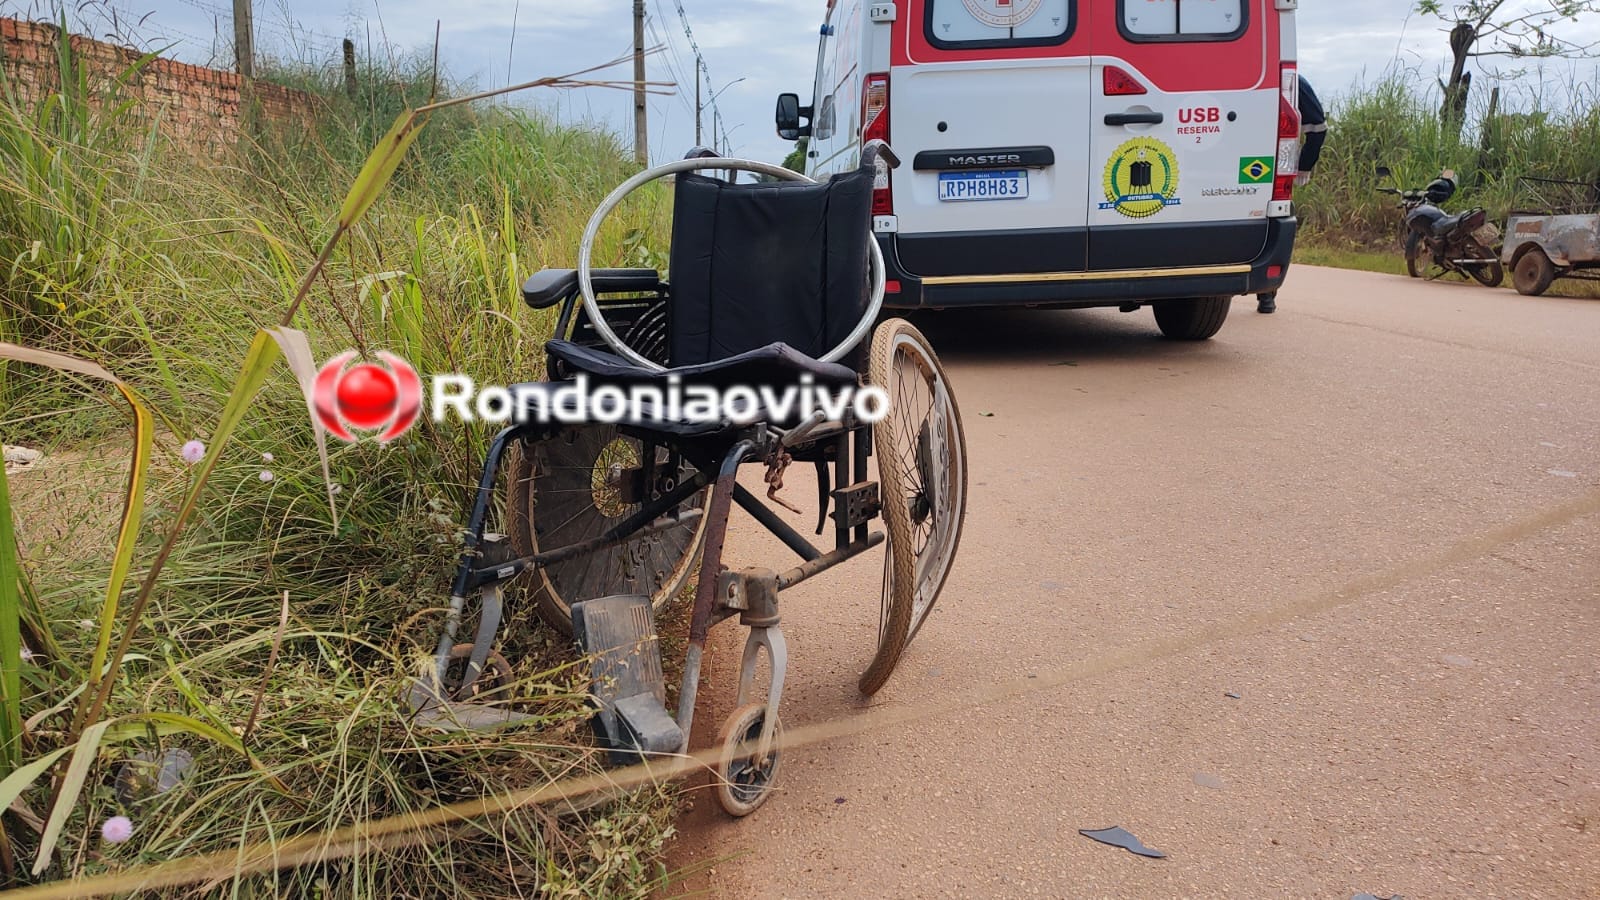 OMISSÃO: Cadeirante é atropelado por carro e motorista foge sem prestar socorro